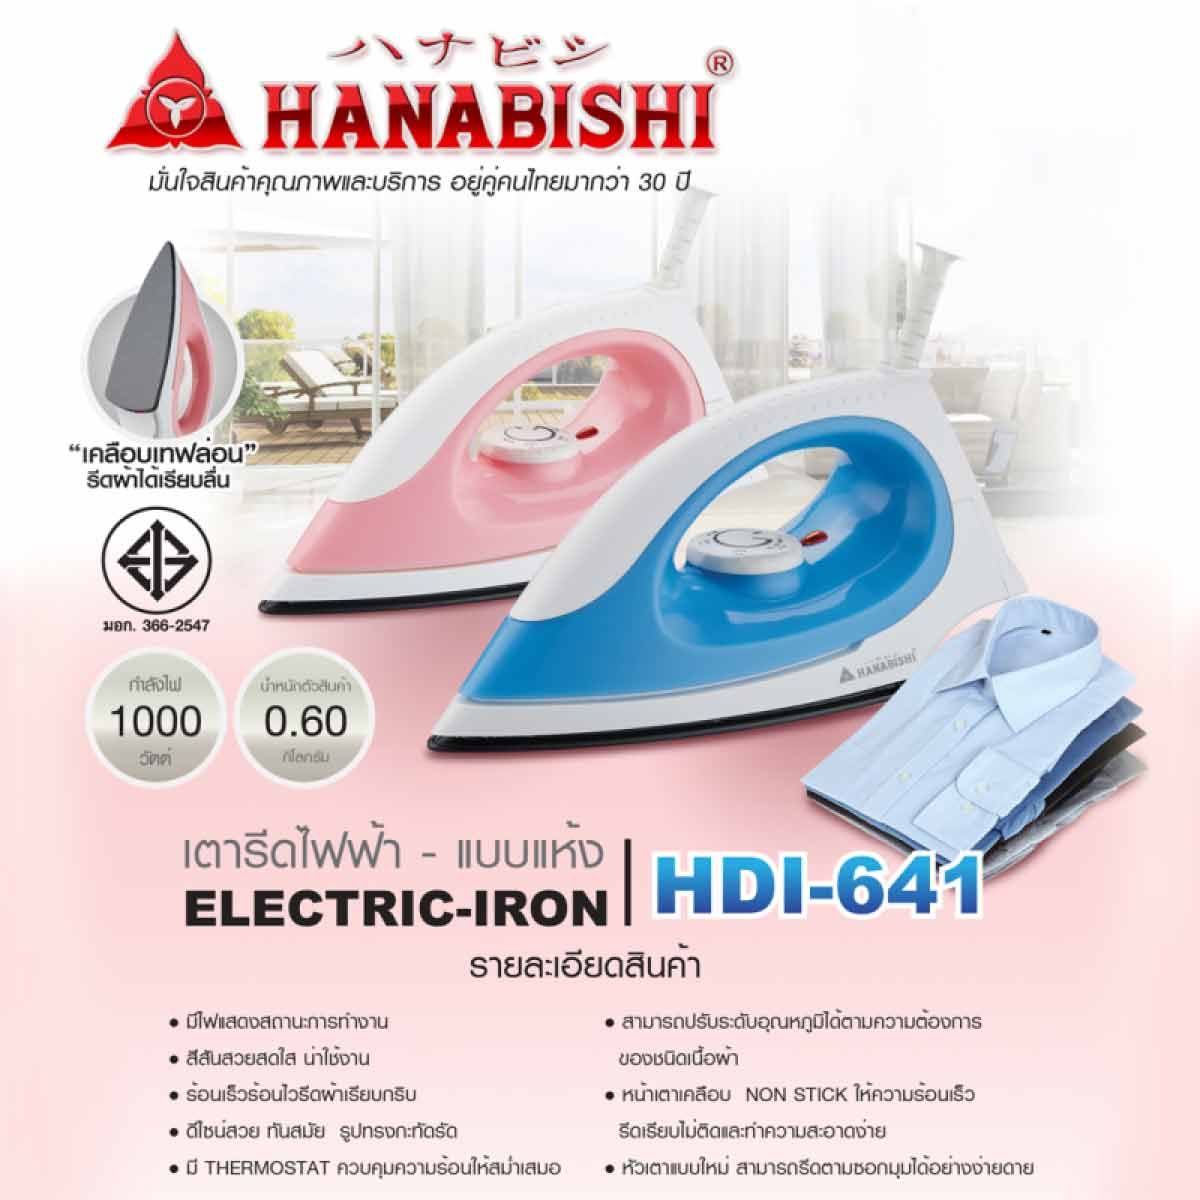 HANABISHI เตารีดไฟฟ้าแบบแห้ง ขนาด 1000W รุ่น HDI-641